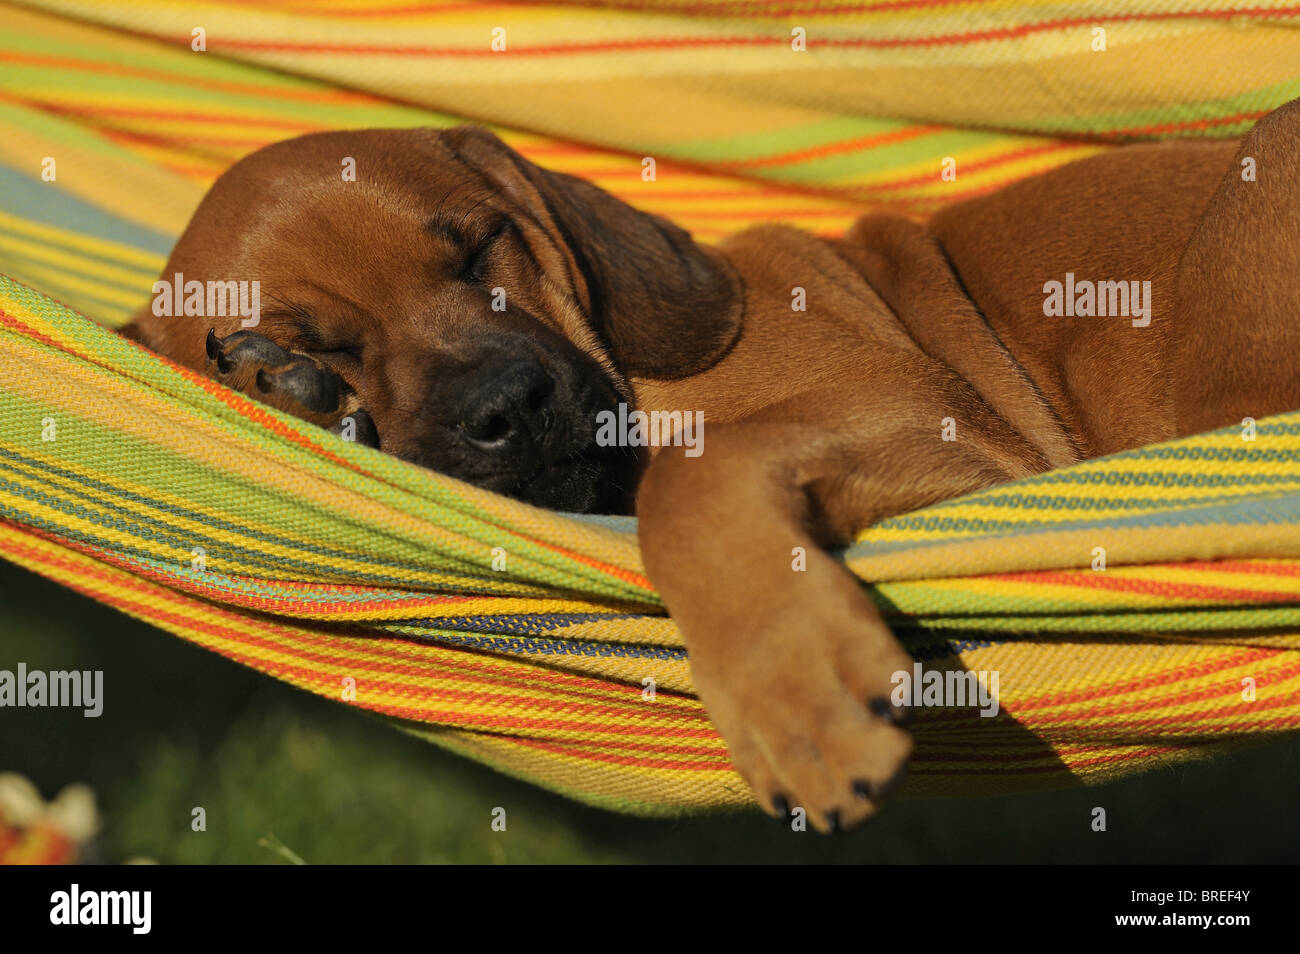 Le Rhodesian Ridgeback (Canis lupus familiaris). Chiot dormir dans un hamac. Banque D'Images